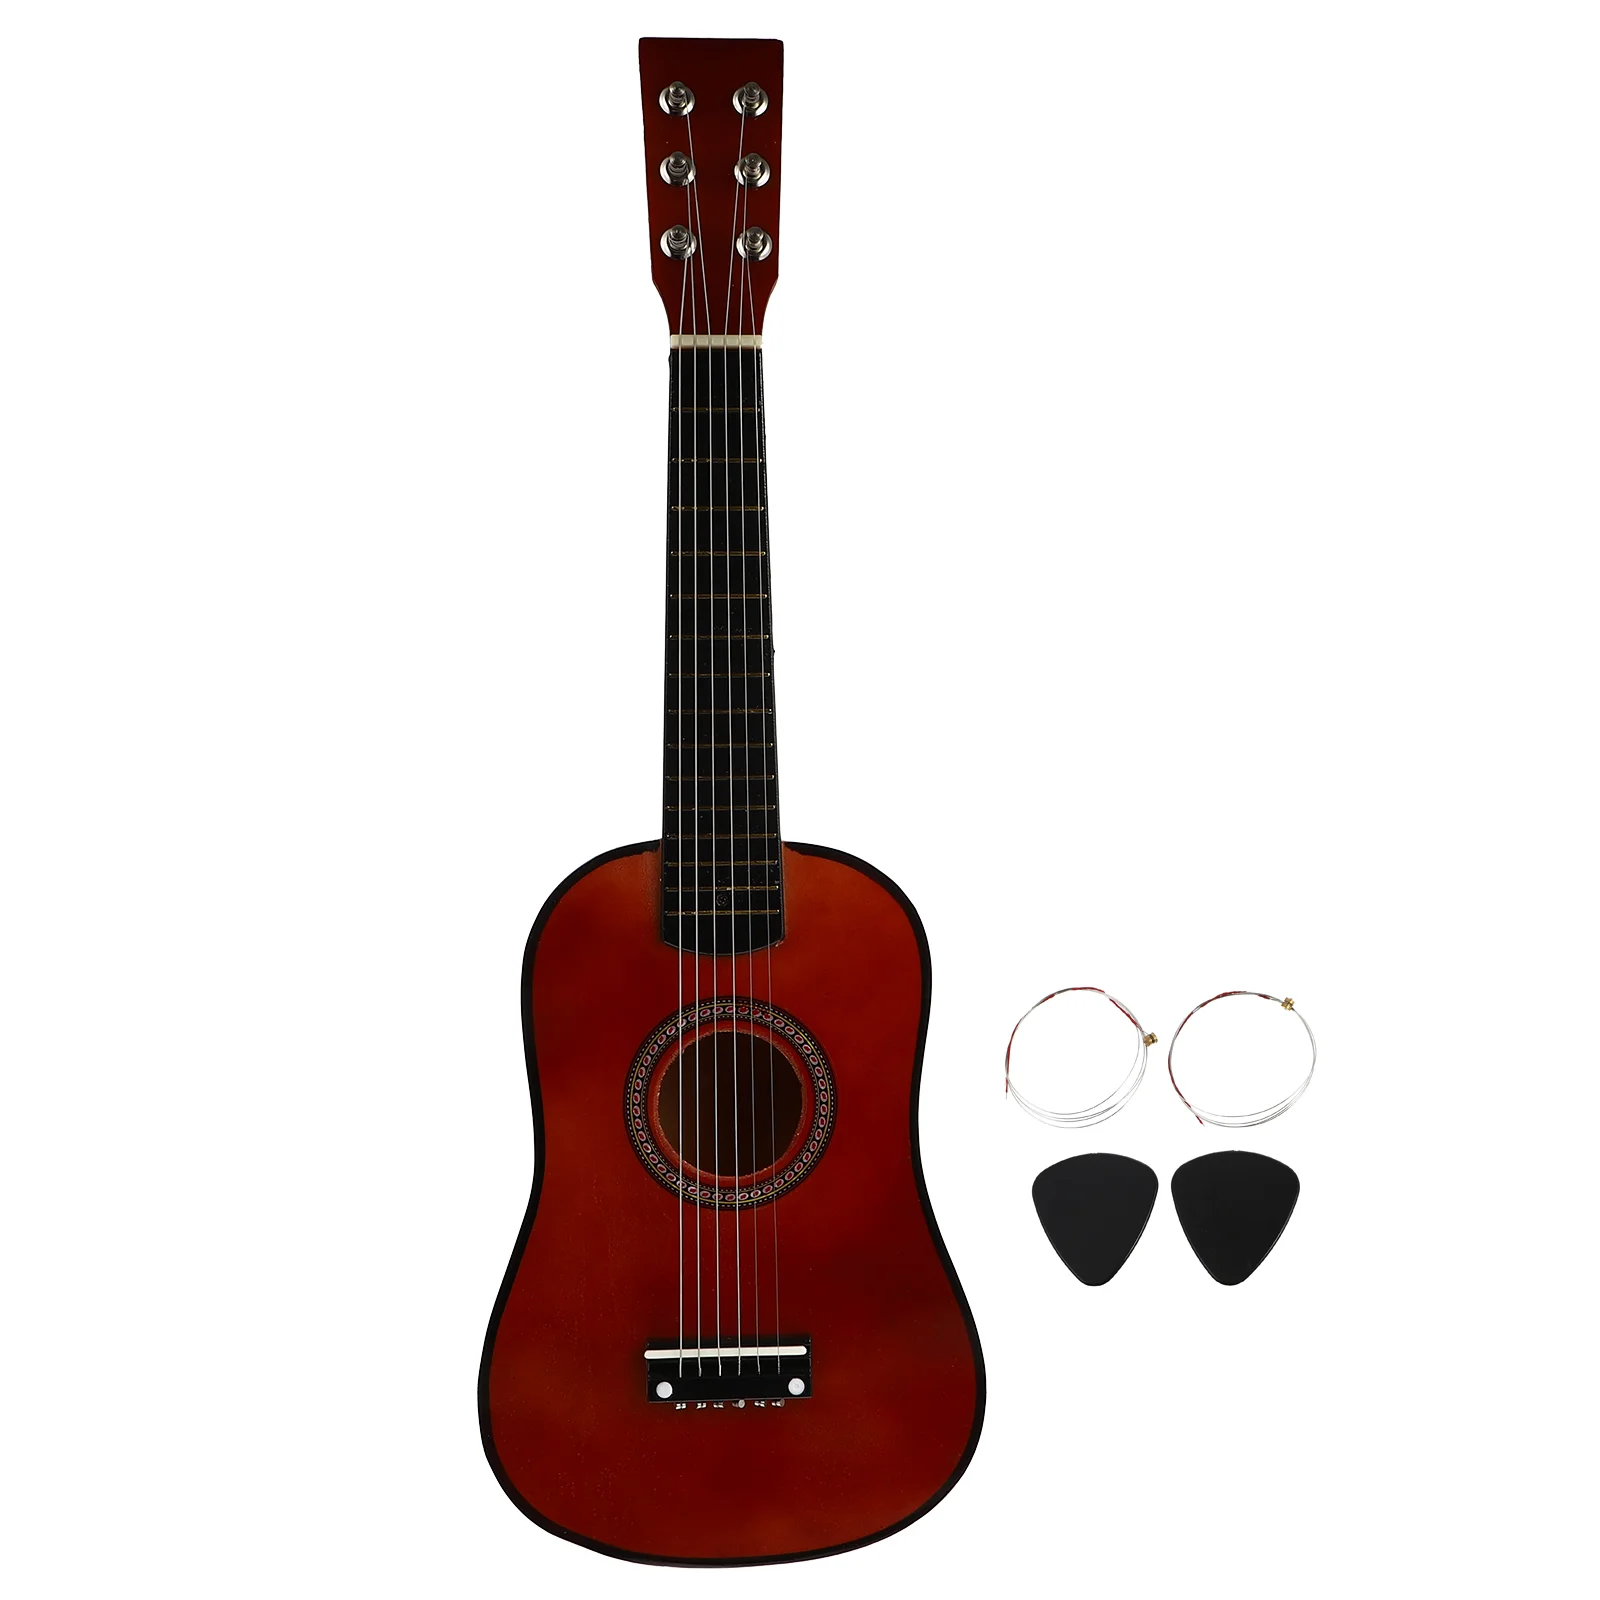 

23 дюймовая гитара, игрушки adко, практикованная гитара, музыкальный народный инструмент Aldult, деревянная забавная гитара, игрушка, Детский на...